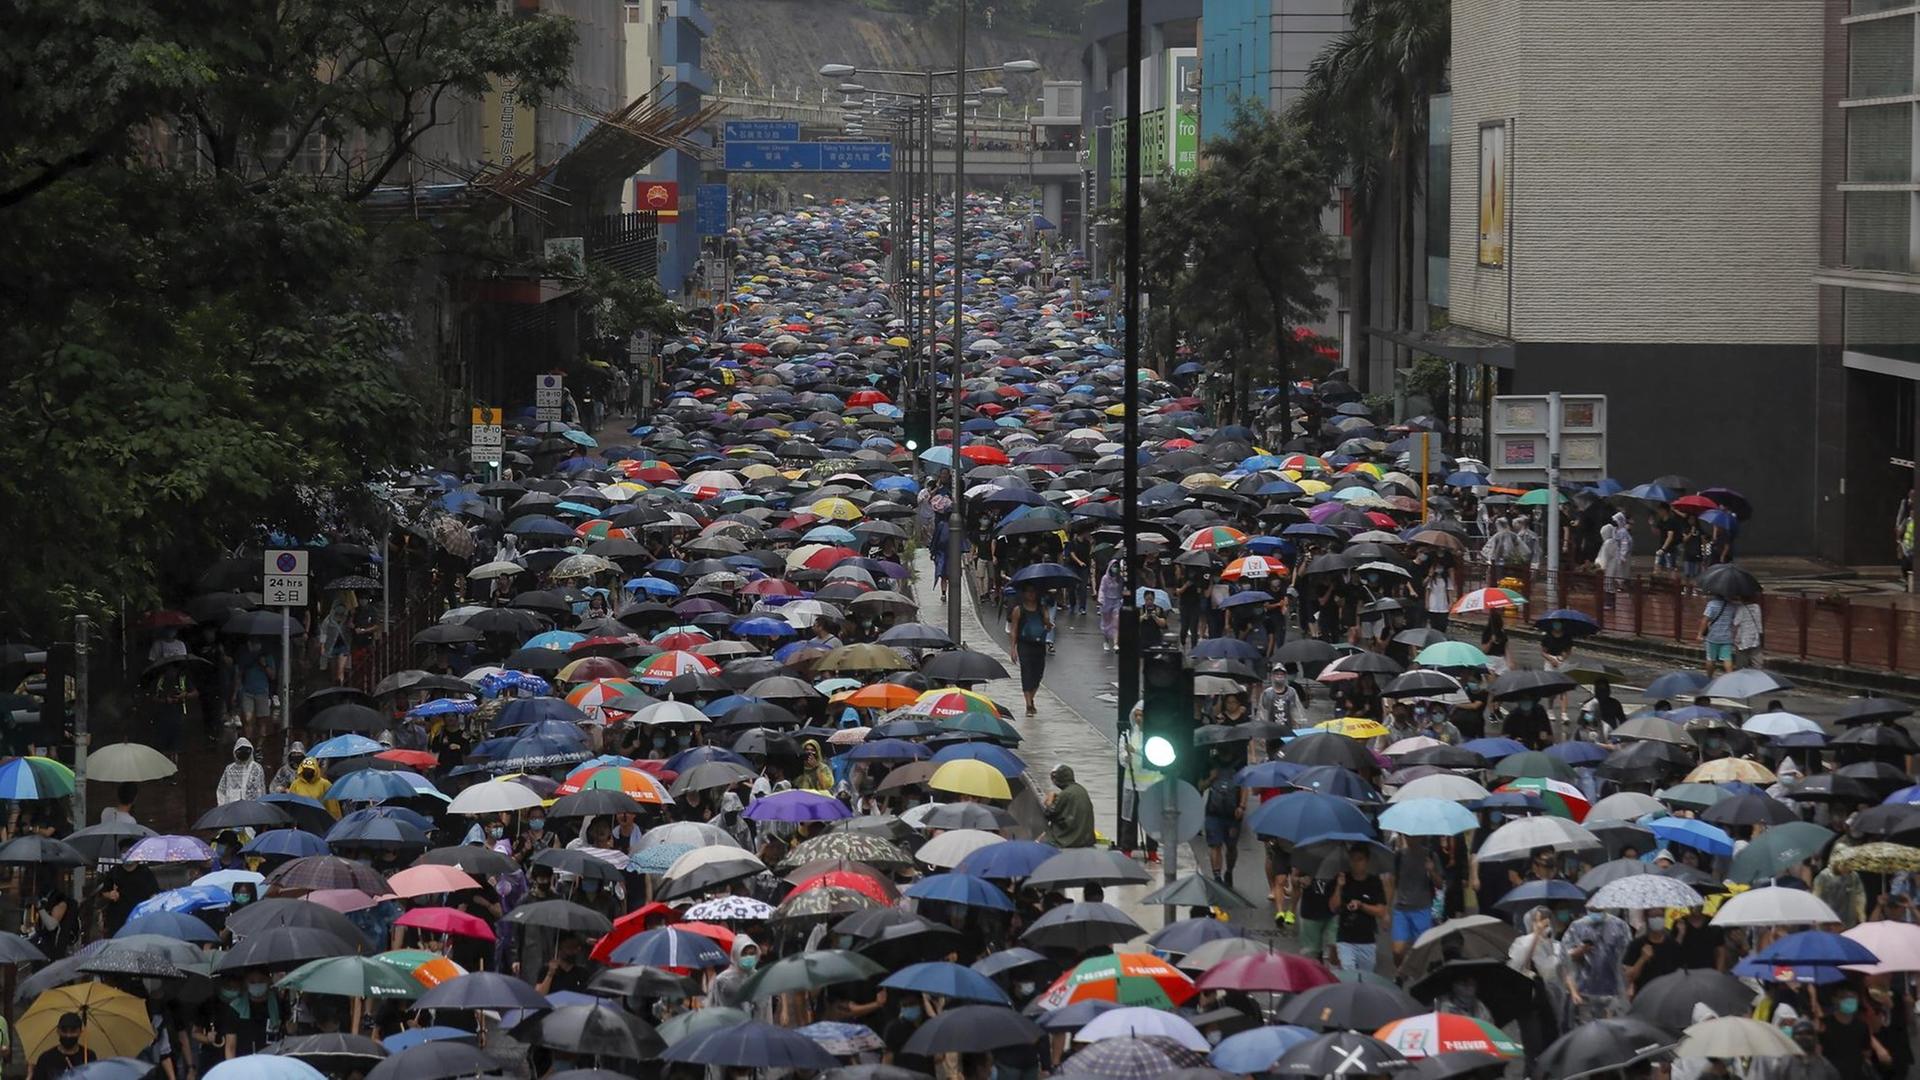 Ein langer Demonstrationszug mit tausenden Regenschirmen zieht eine breite Straße entlang durch eine Häuserschlucht.